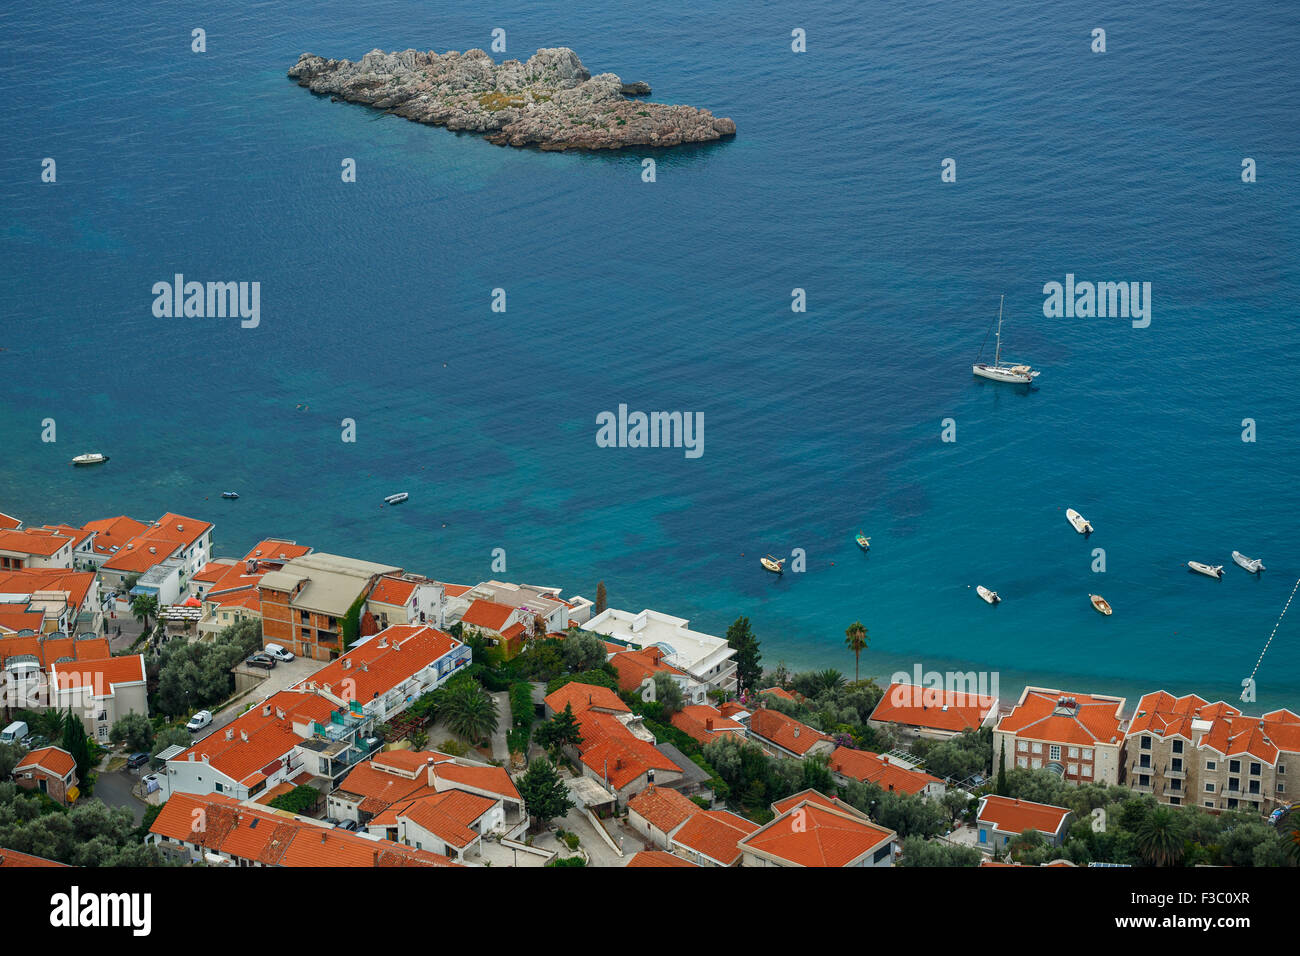 Il pittoresco panorama della costa adriatica nei pressi della città di Sveti Stefan, Montenegro, Balcani Foto Stock